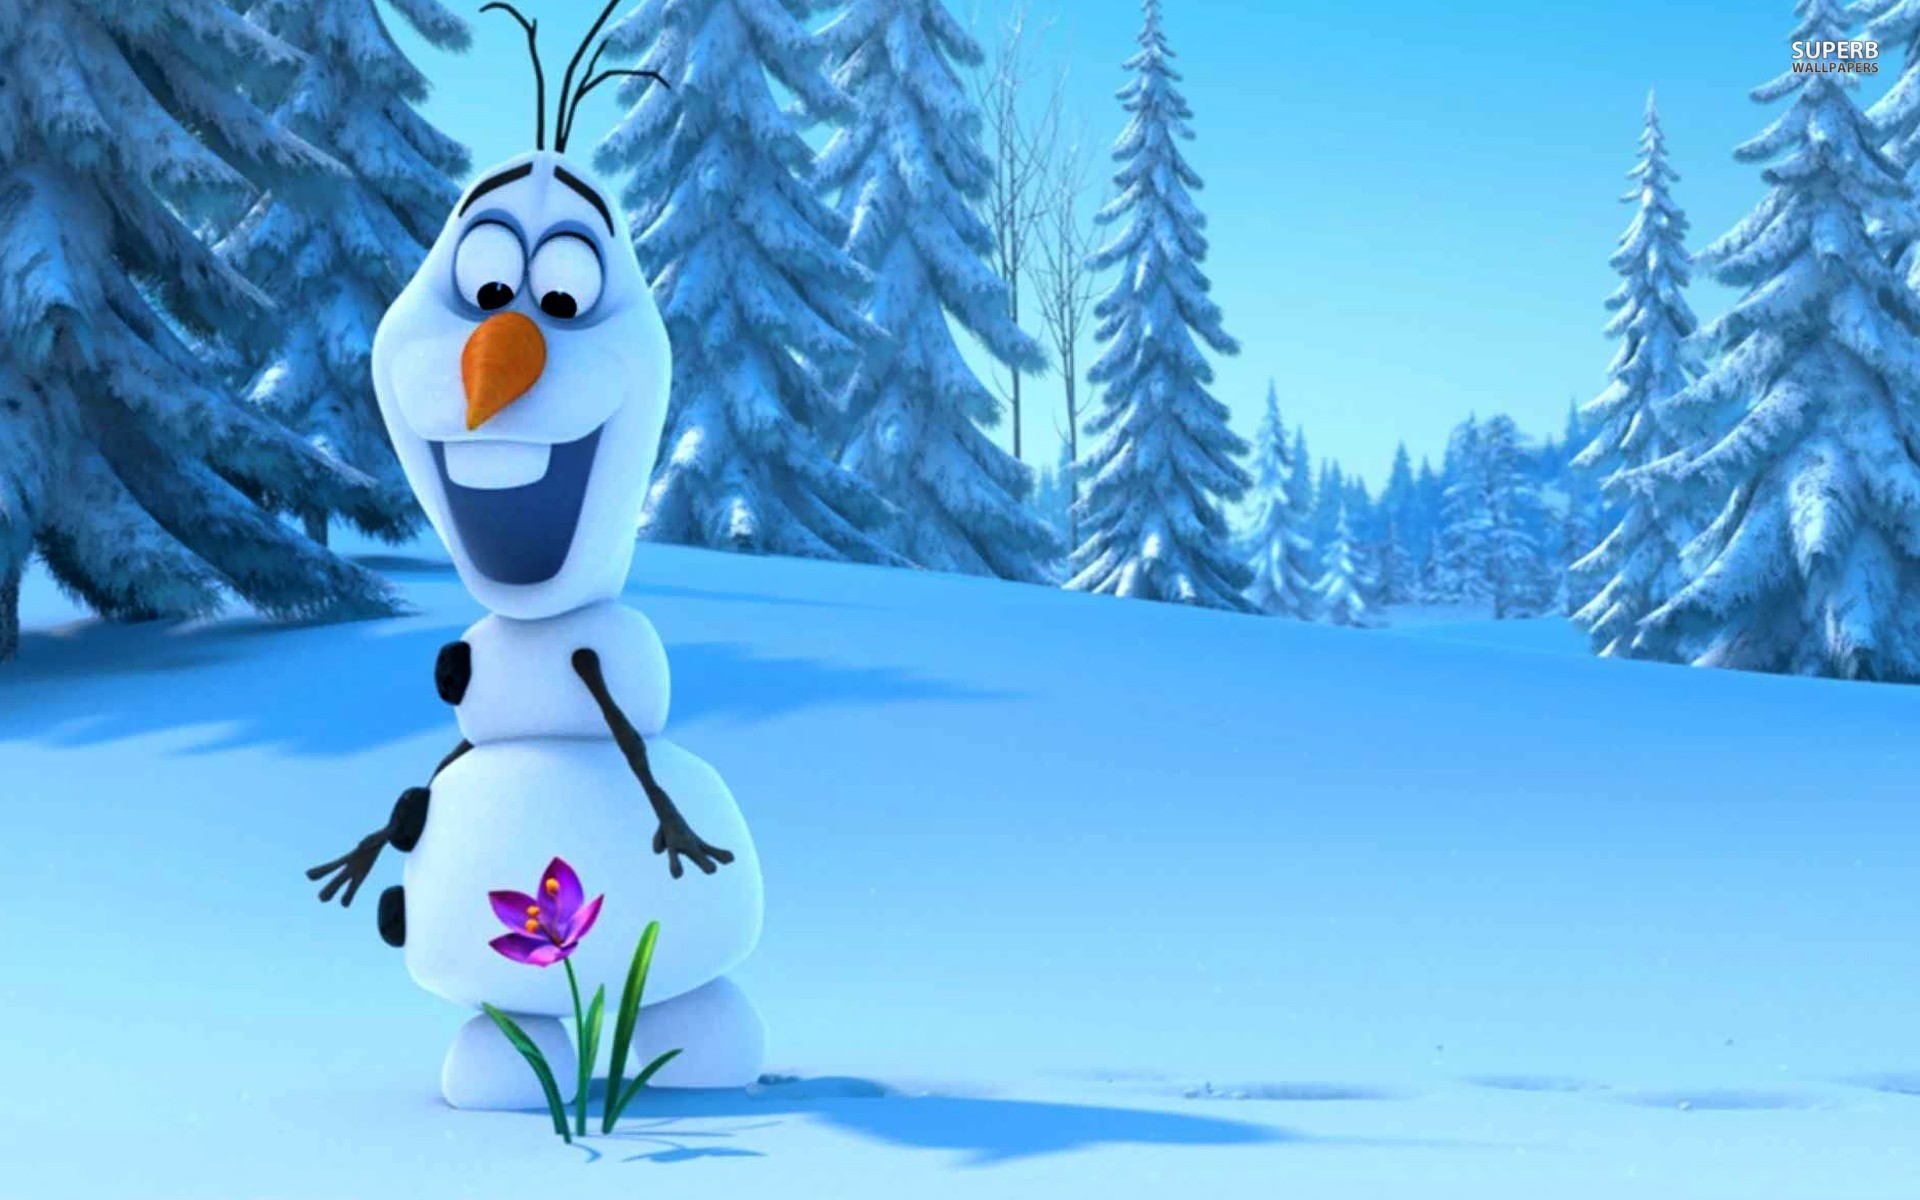 Immagini Natale Frozen.Frozen Il Classico Disney Di Natale Vita Di Un Io